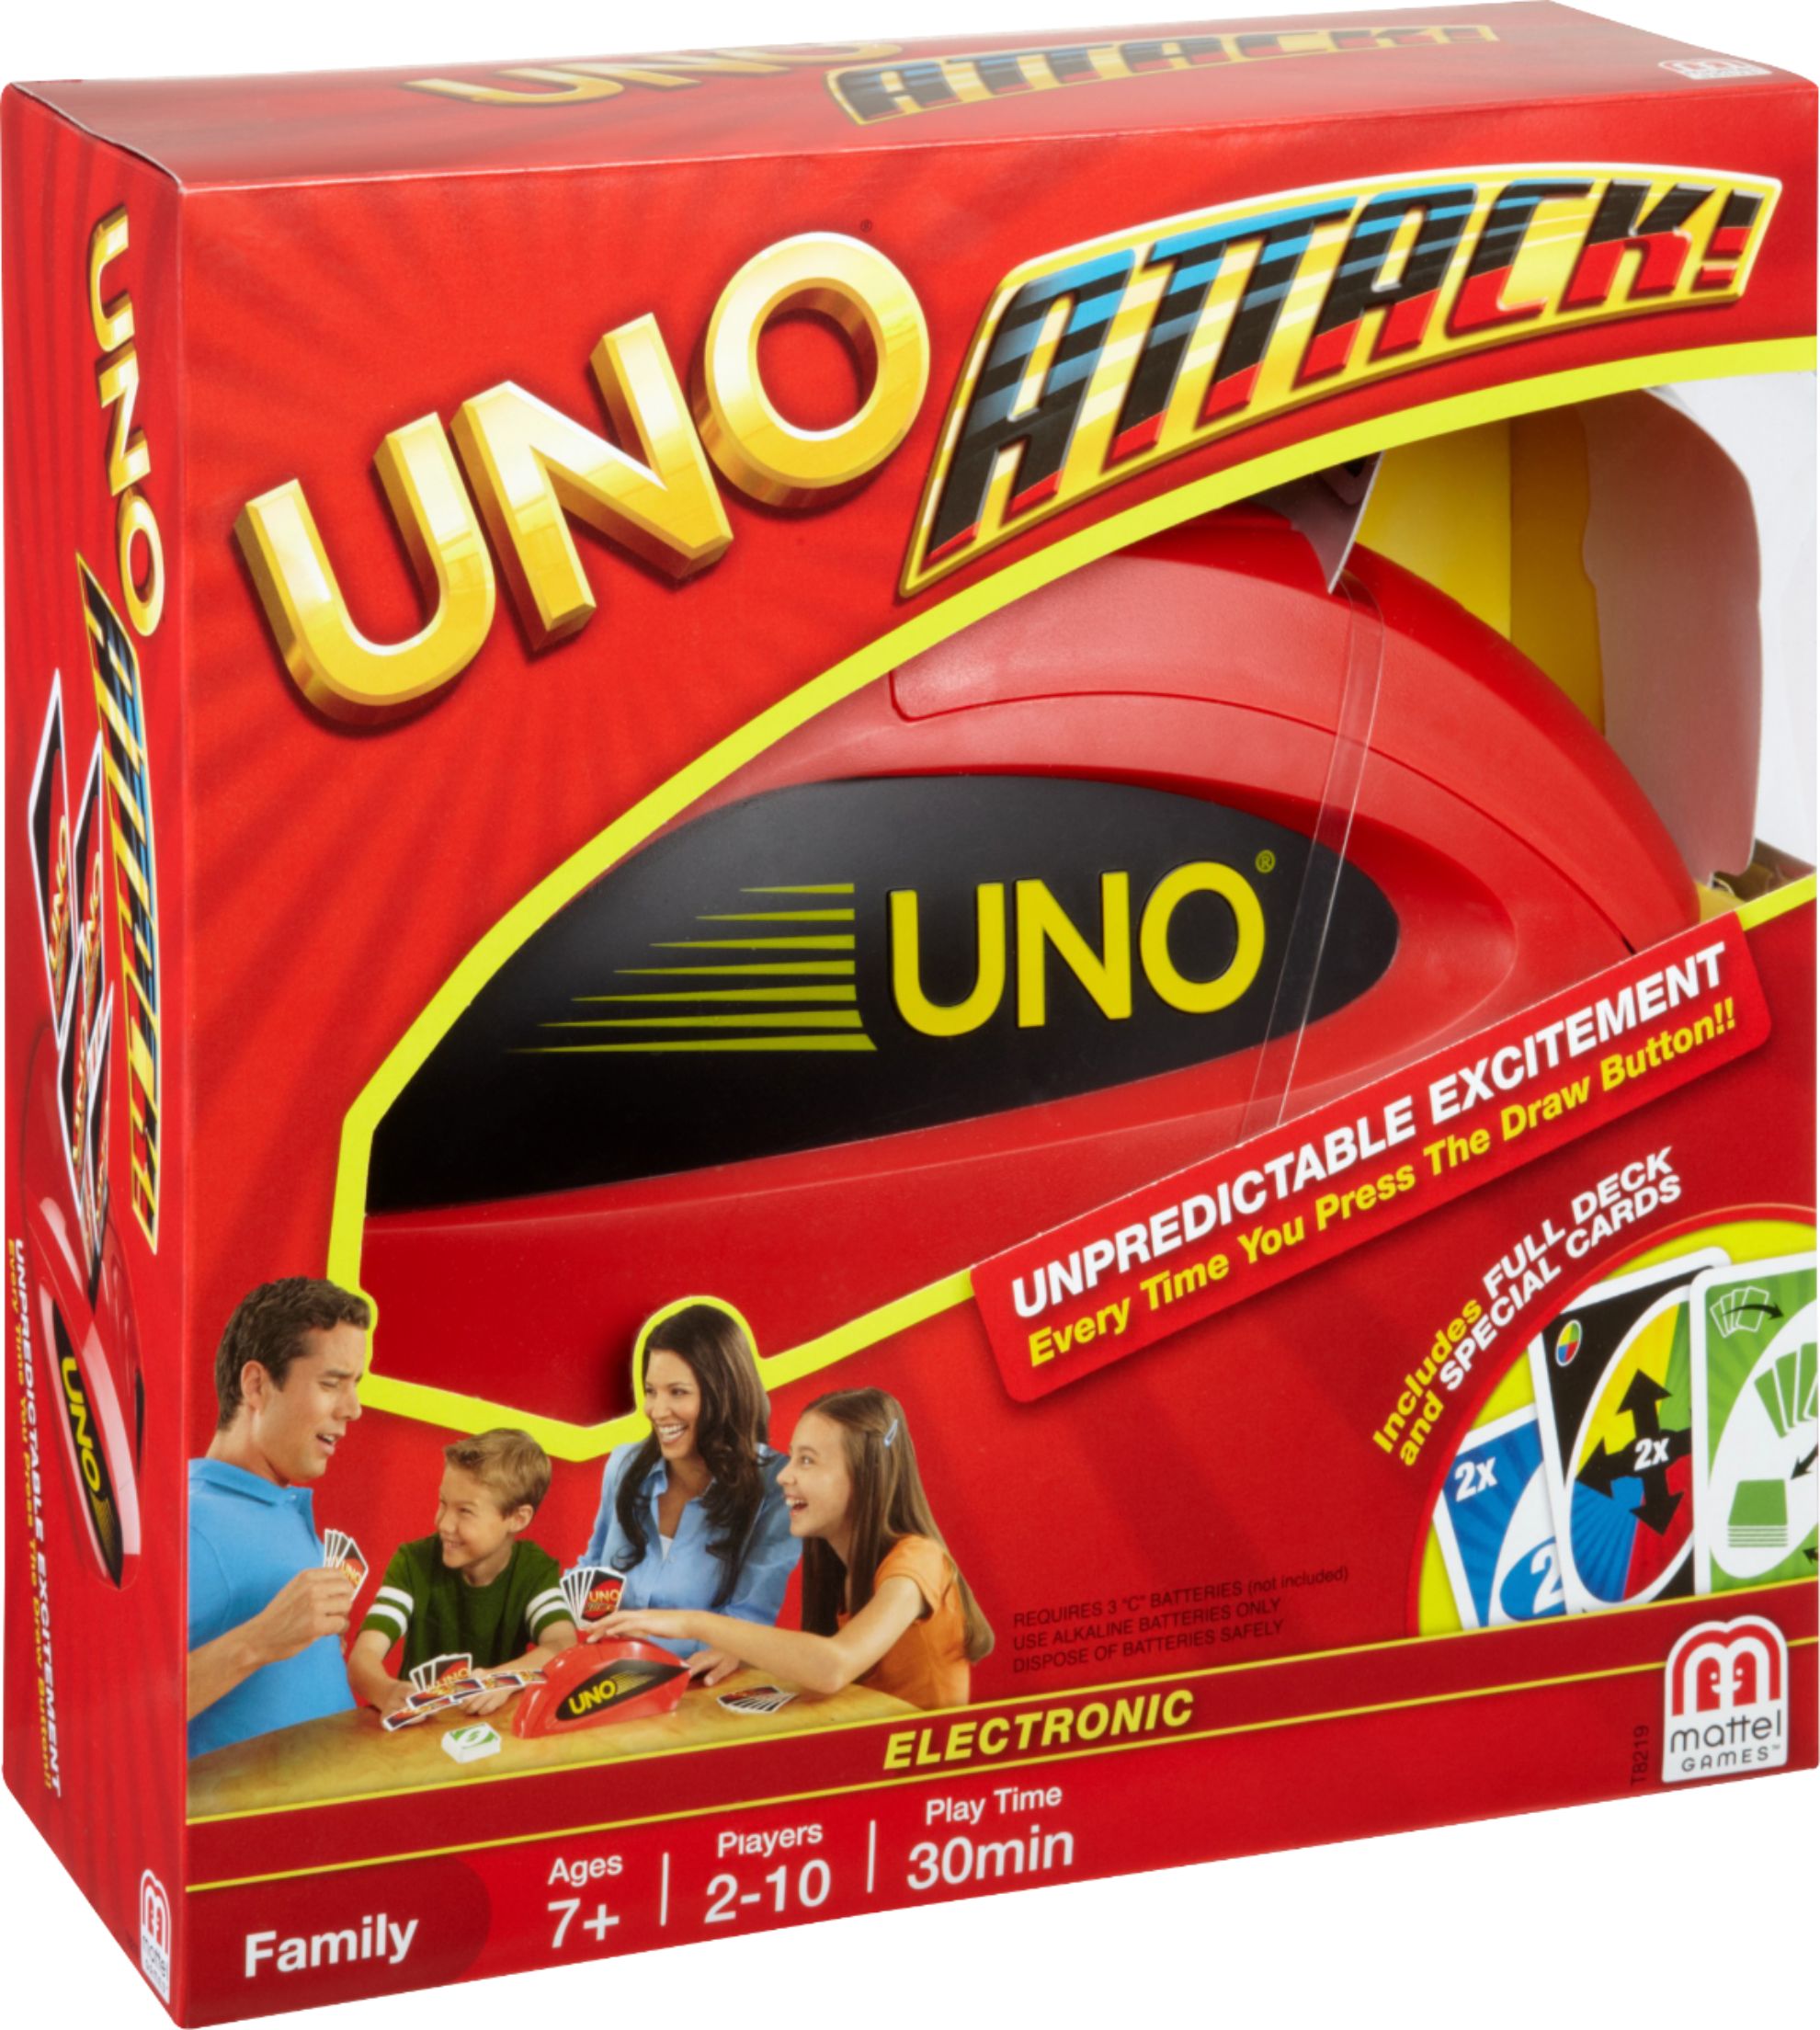 Red ATTACK! Best T8219 Buy: UNO Game Mattel